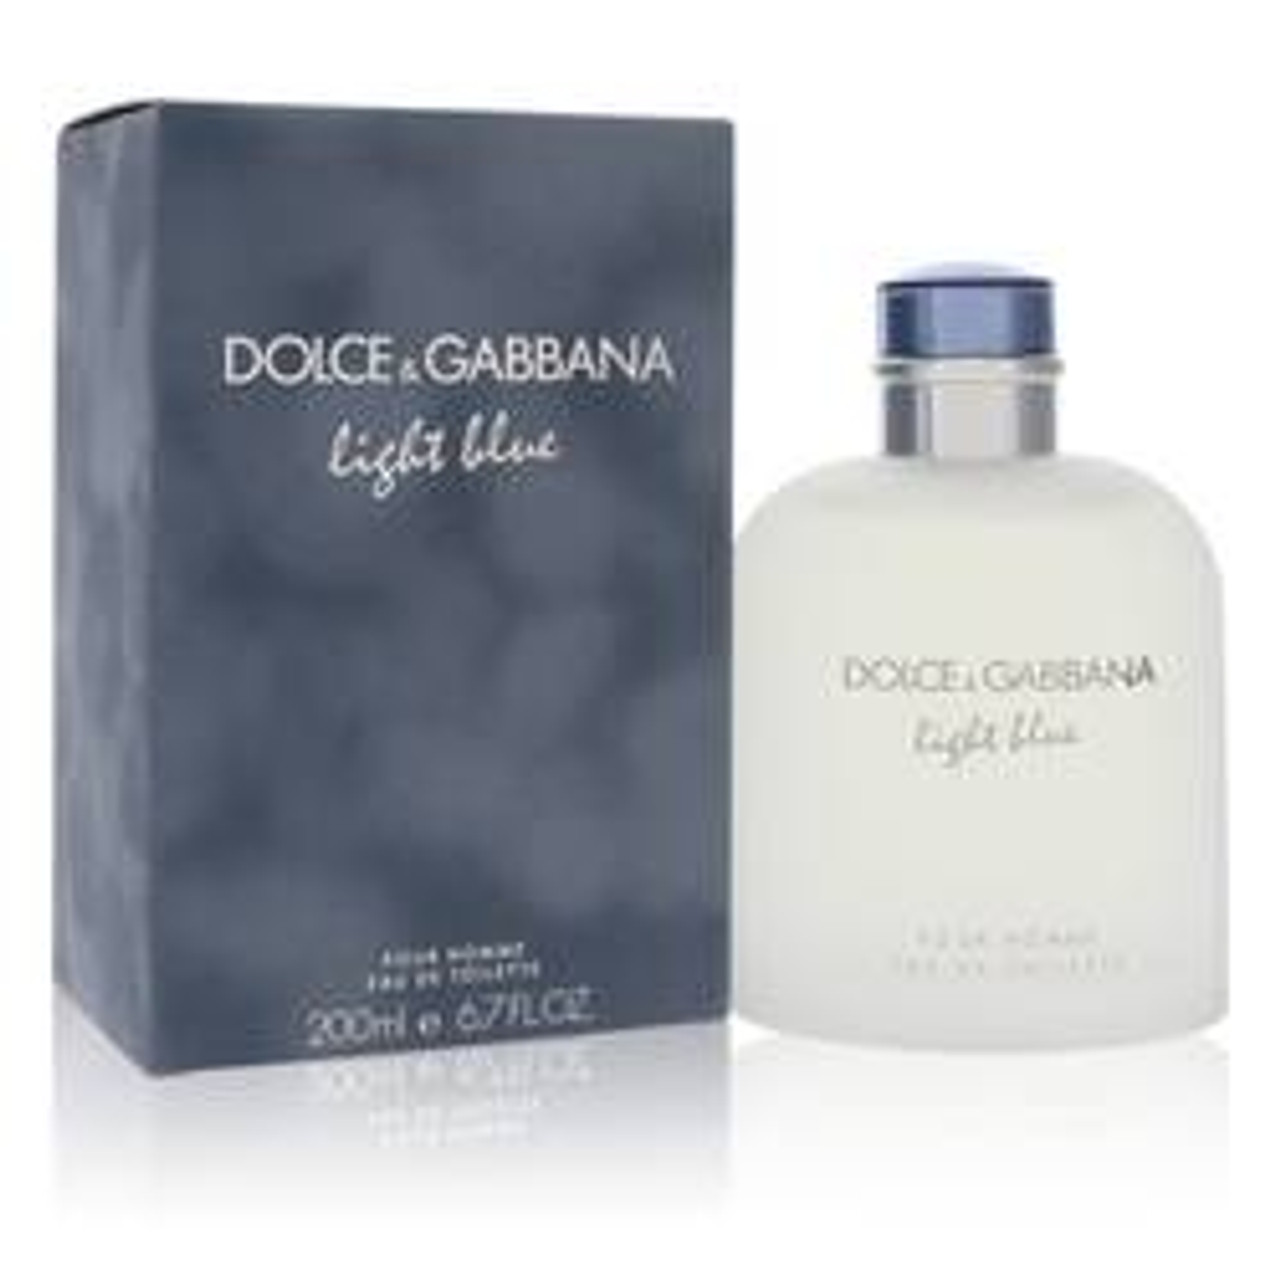 Light Blue Cologne By Dolce & Gabbana Eau De Toilette Spray 6.8 oz for Men - *Pre-Order